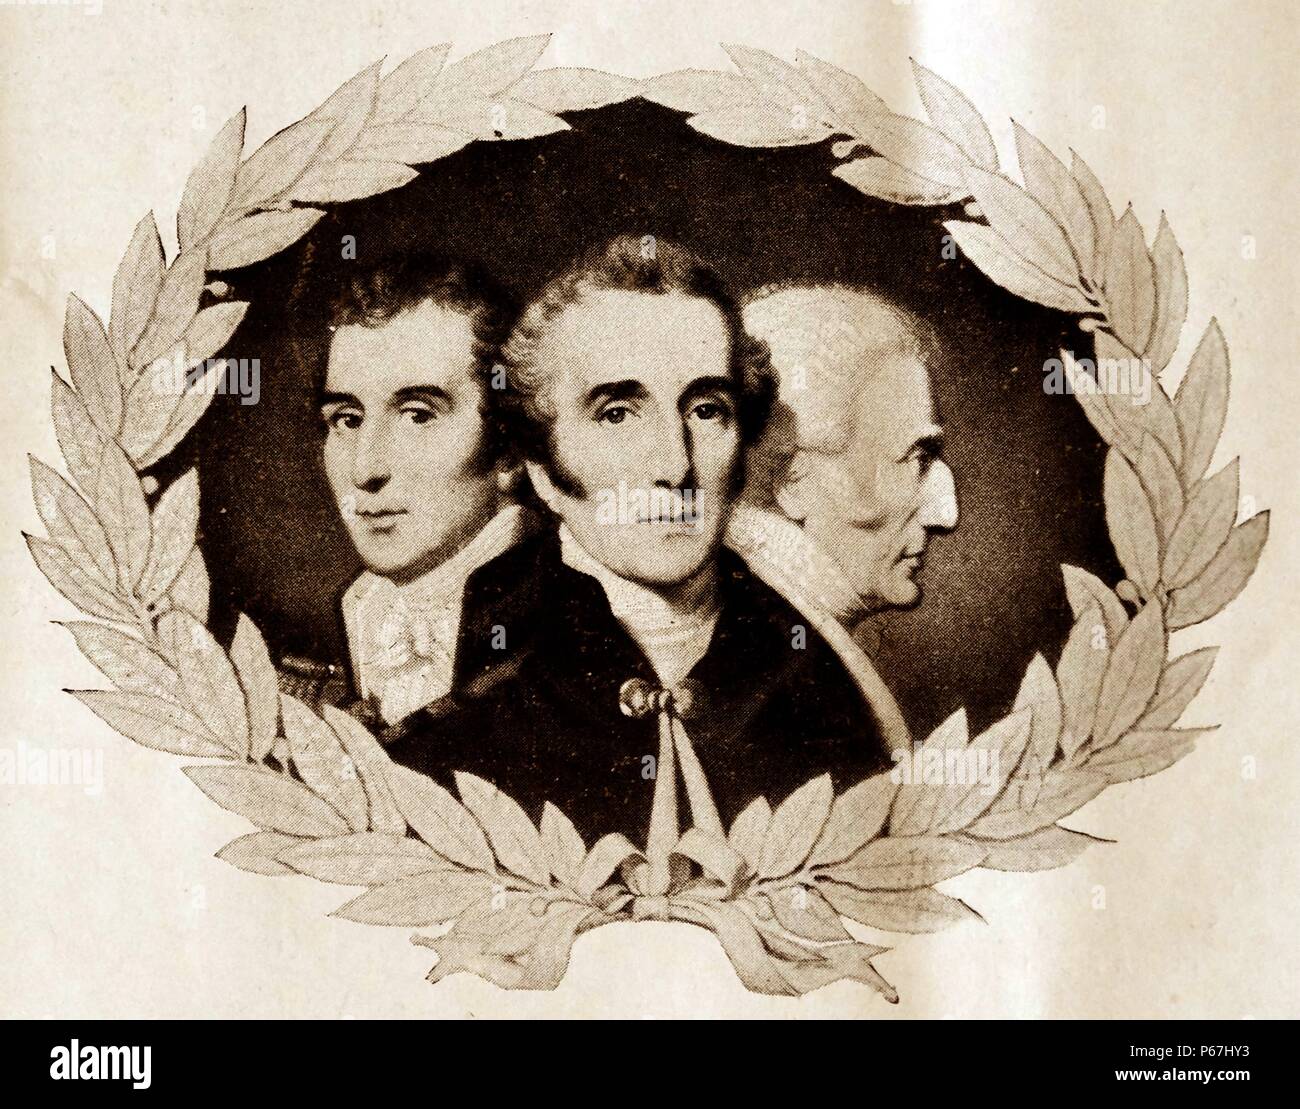 Drei konfrontiert Porträt des Herzogs von Wellington. Feldmarschall; 1. Arthur Wellesley Herzog von Wellington; (1769 - 14. September 1852); britischer Soldat und Staatsmann Stockfoto